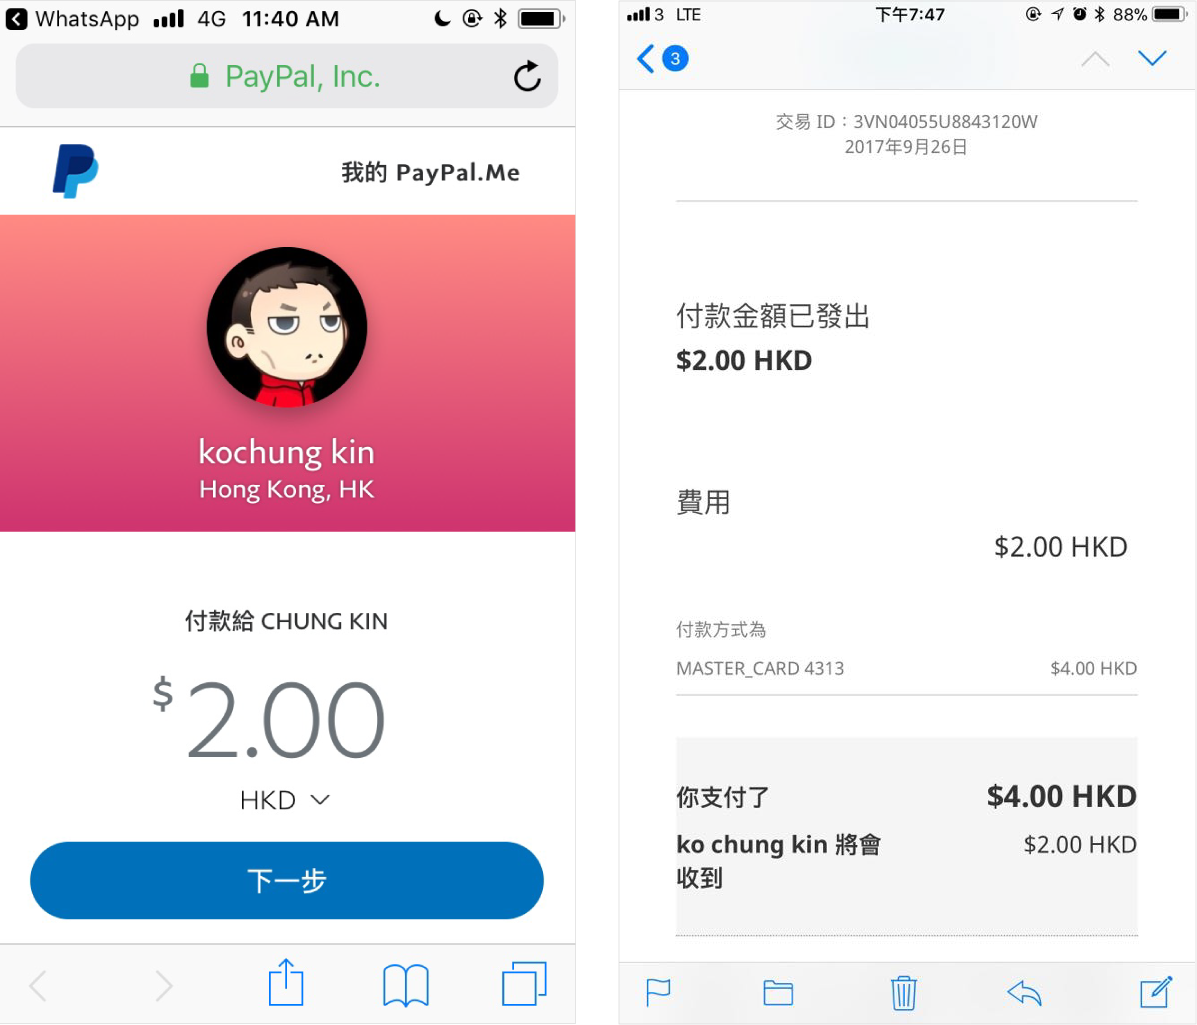 使用PayPal支付HKD2，成本同樣為HKD2，支付成本50%